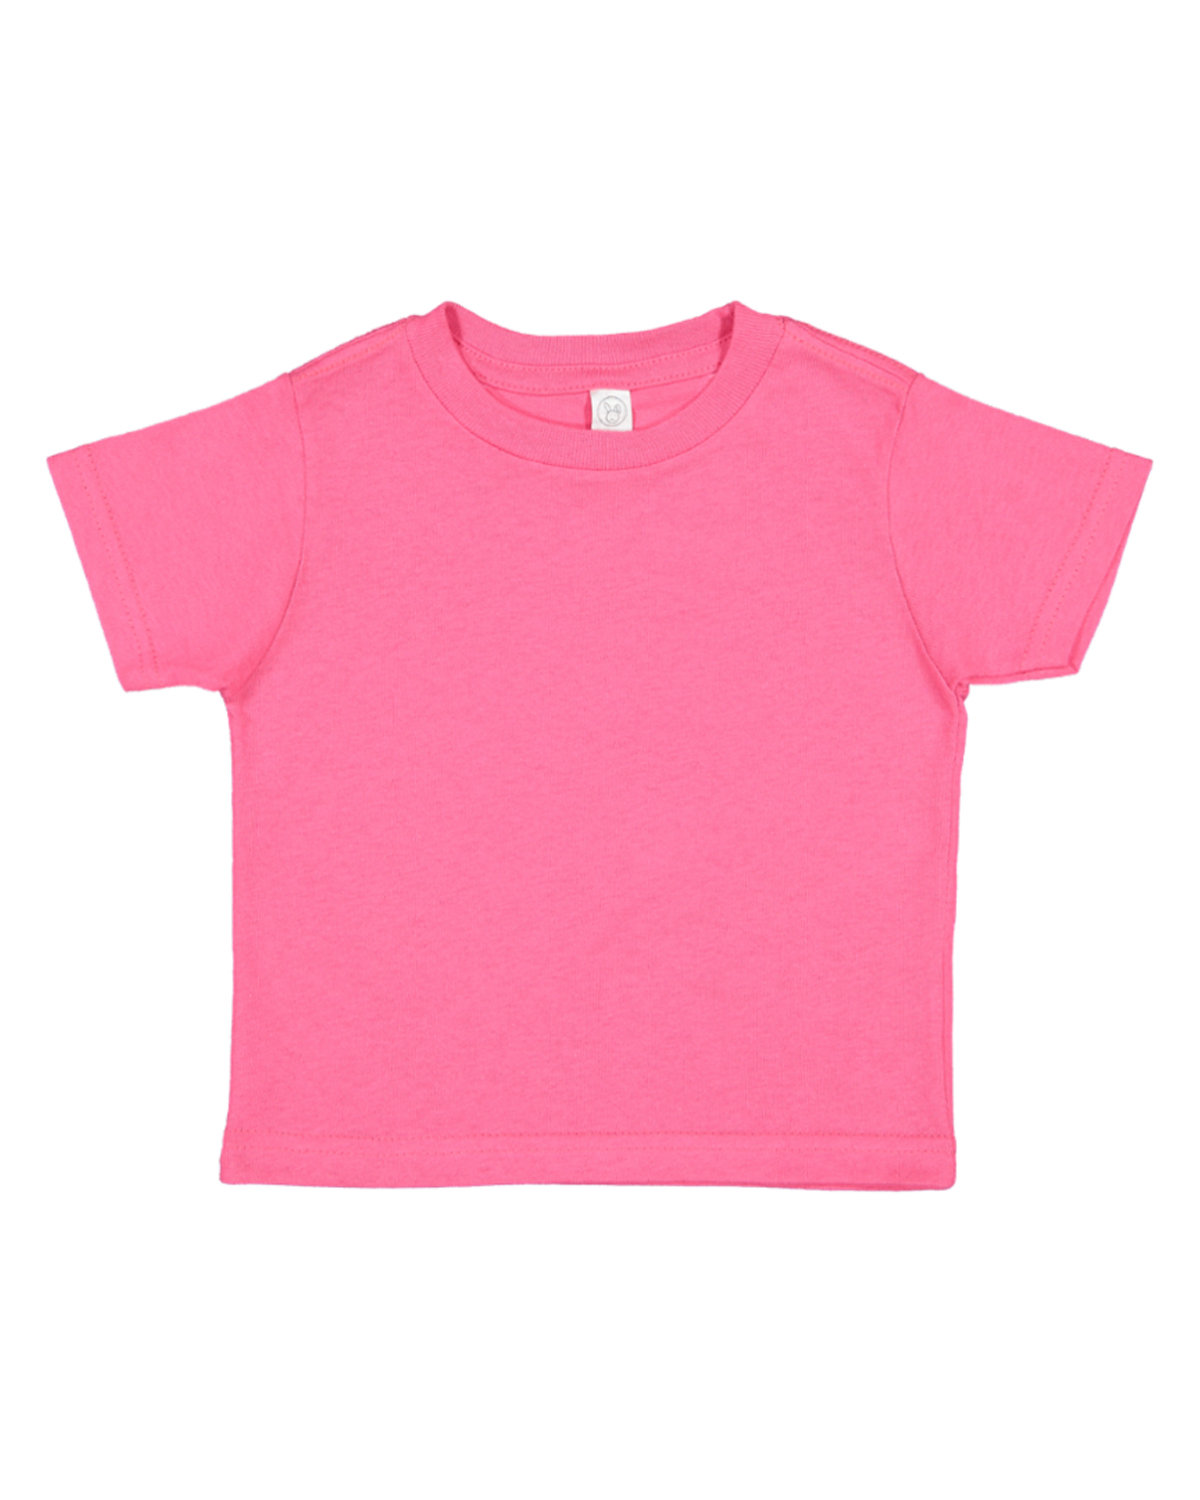 Rabbit Skins Infant Fine Jersey T-Shirt HOT PINK 